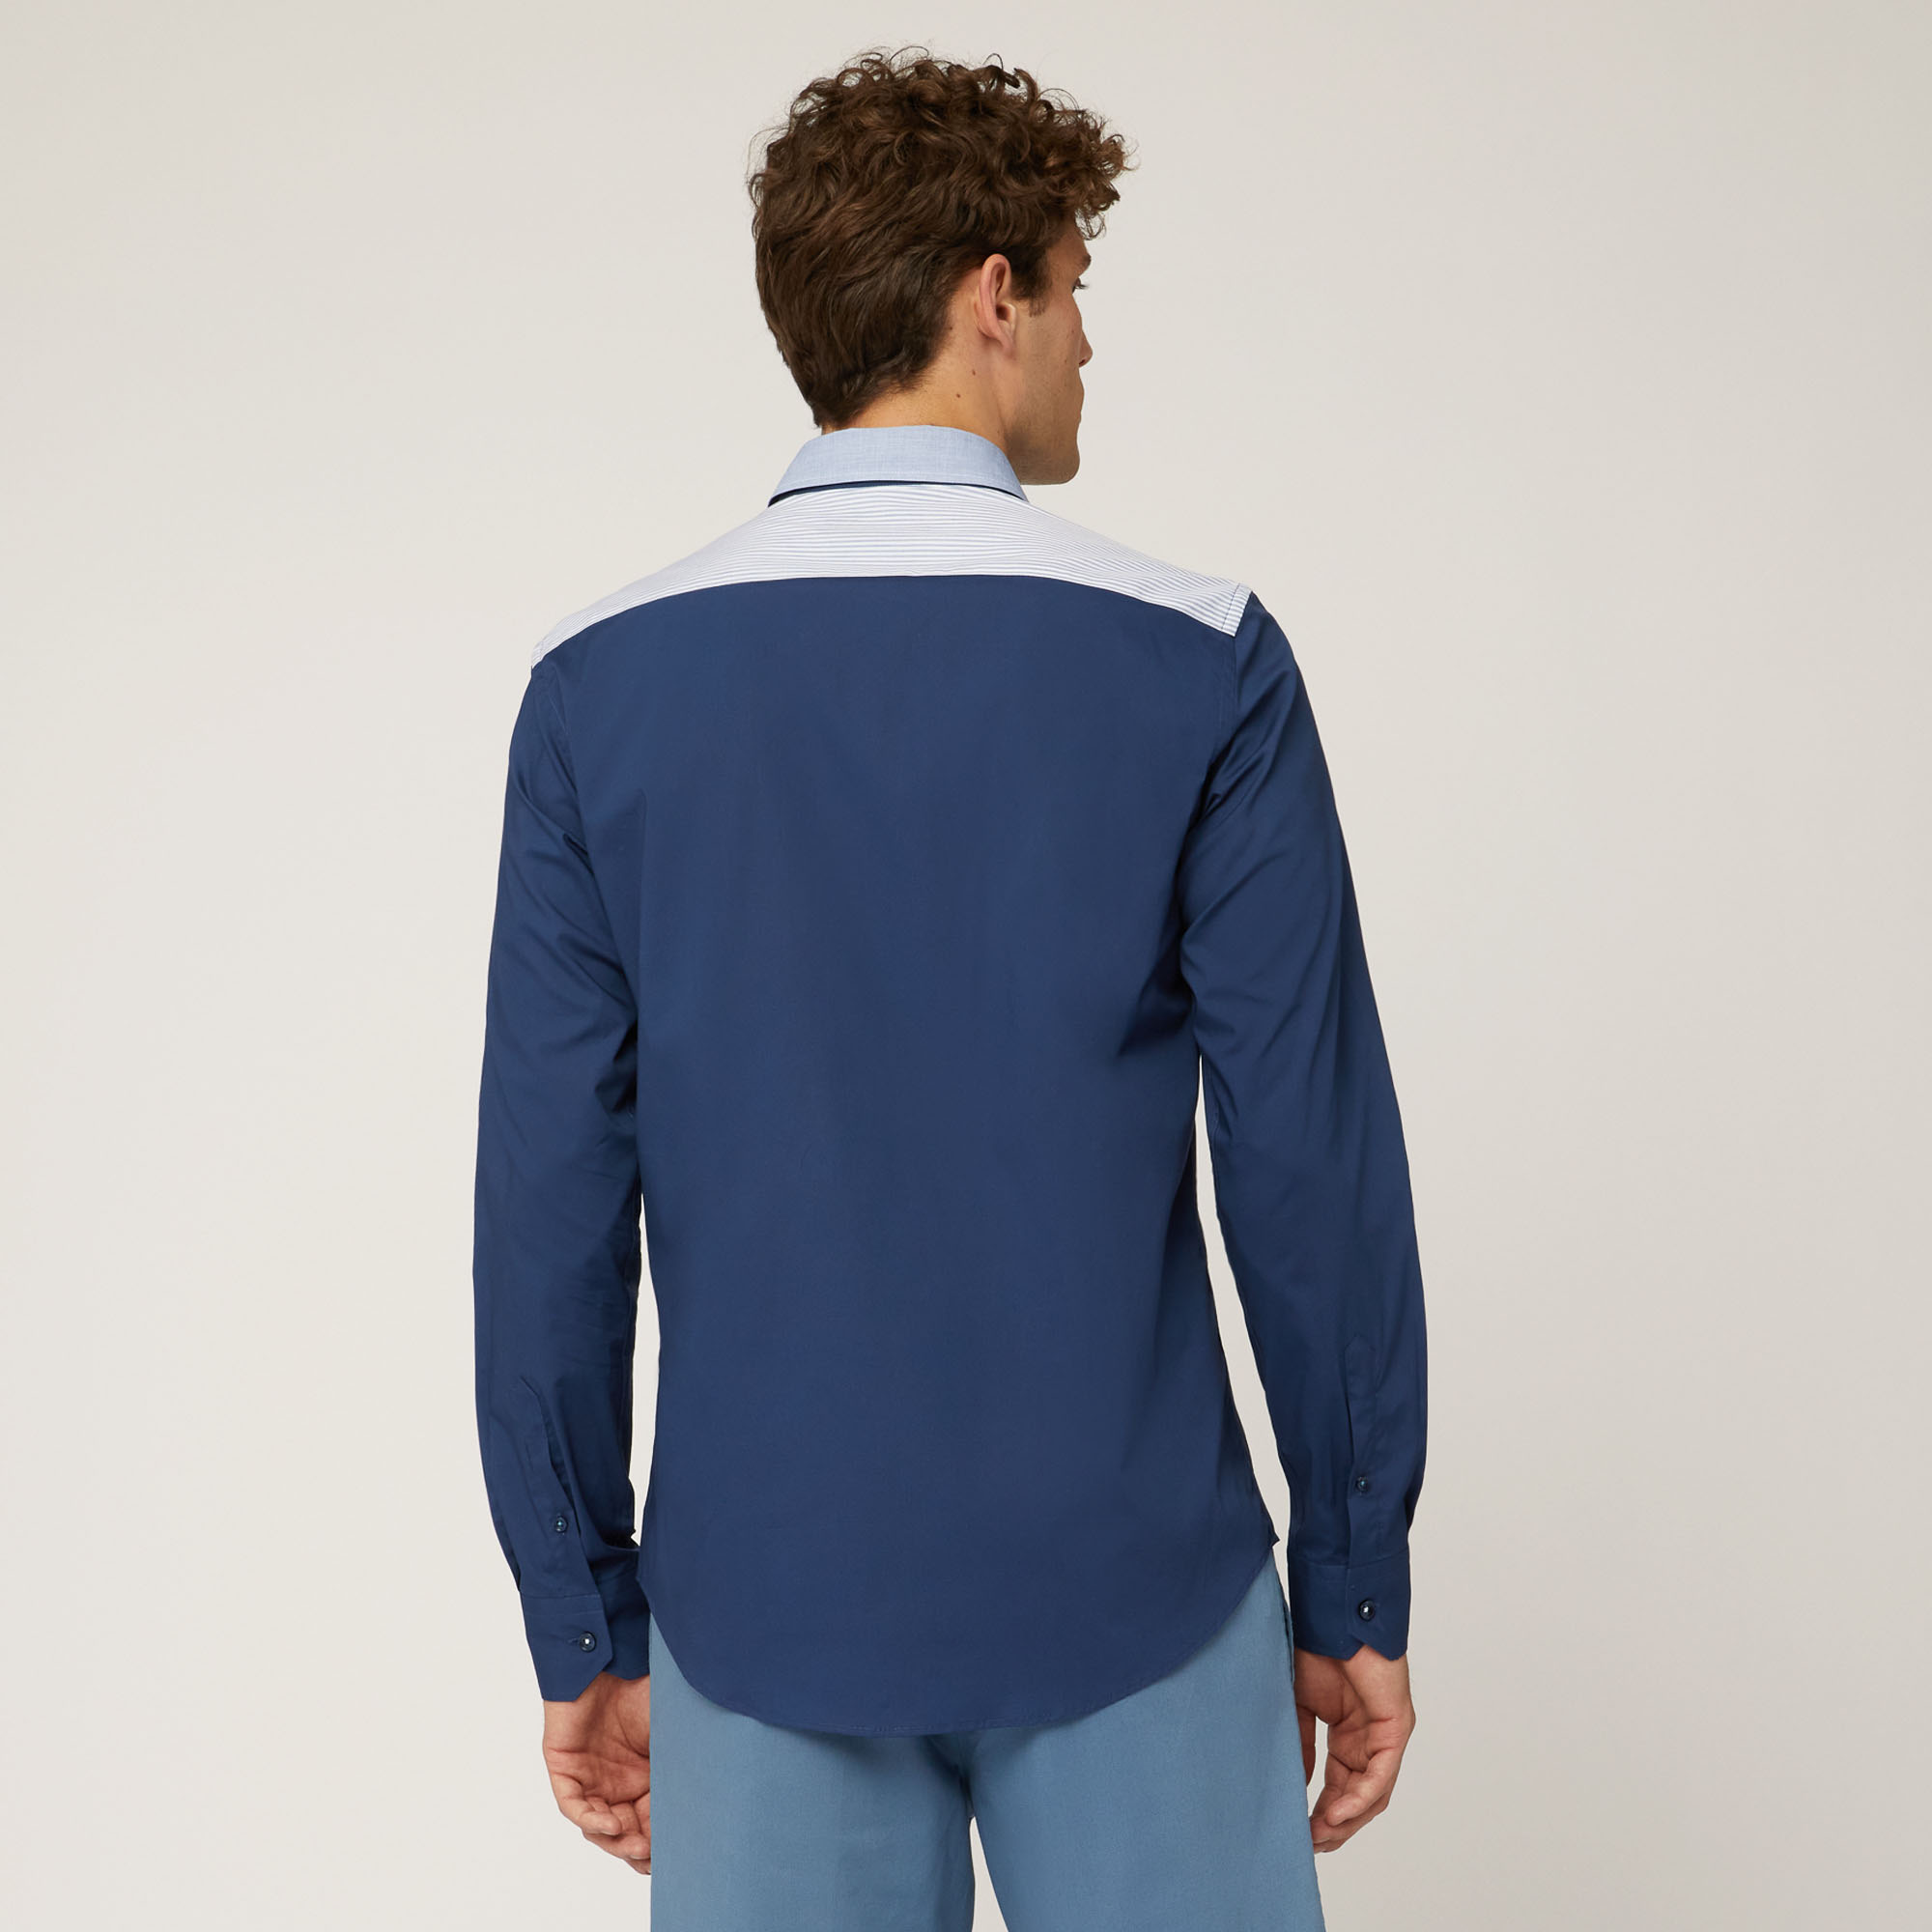 Camicia In Cotone Stretch Con Lettering Applicato, Blu, large image number 1